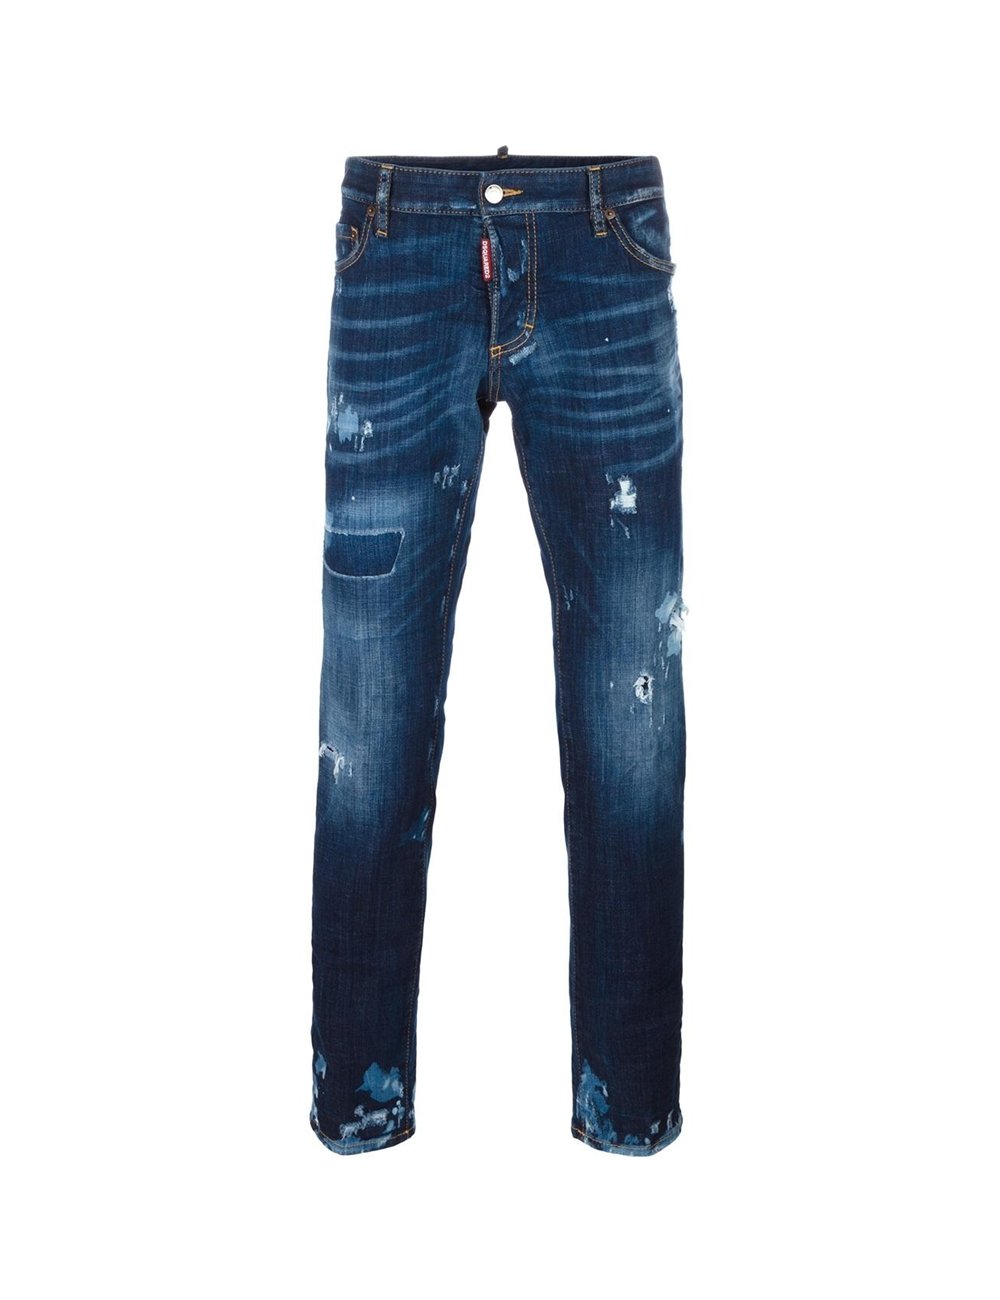 jeans dsquared belgique